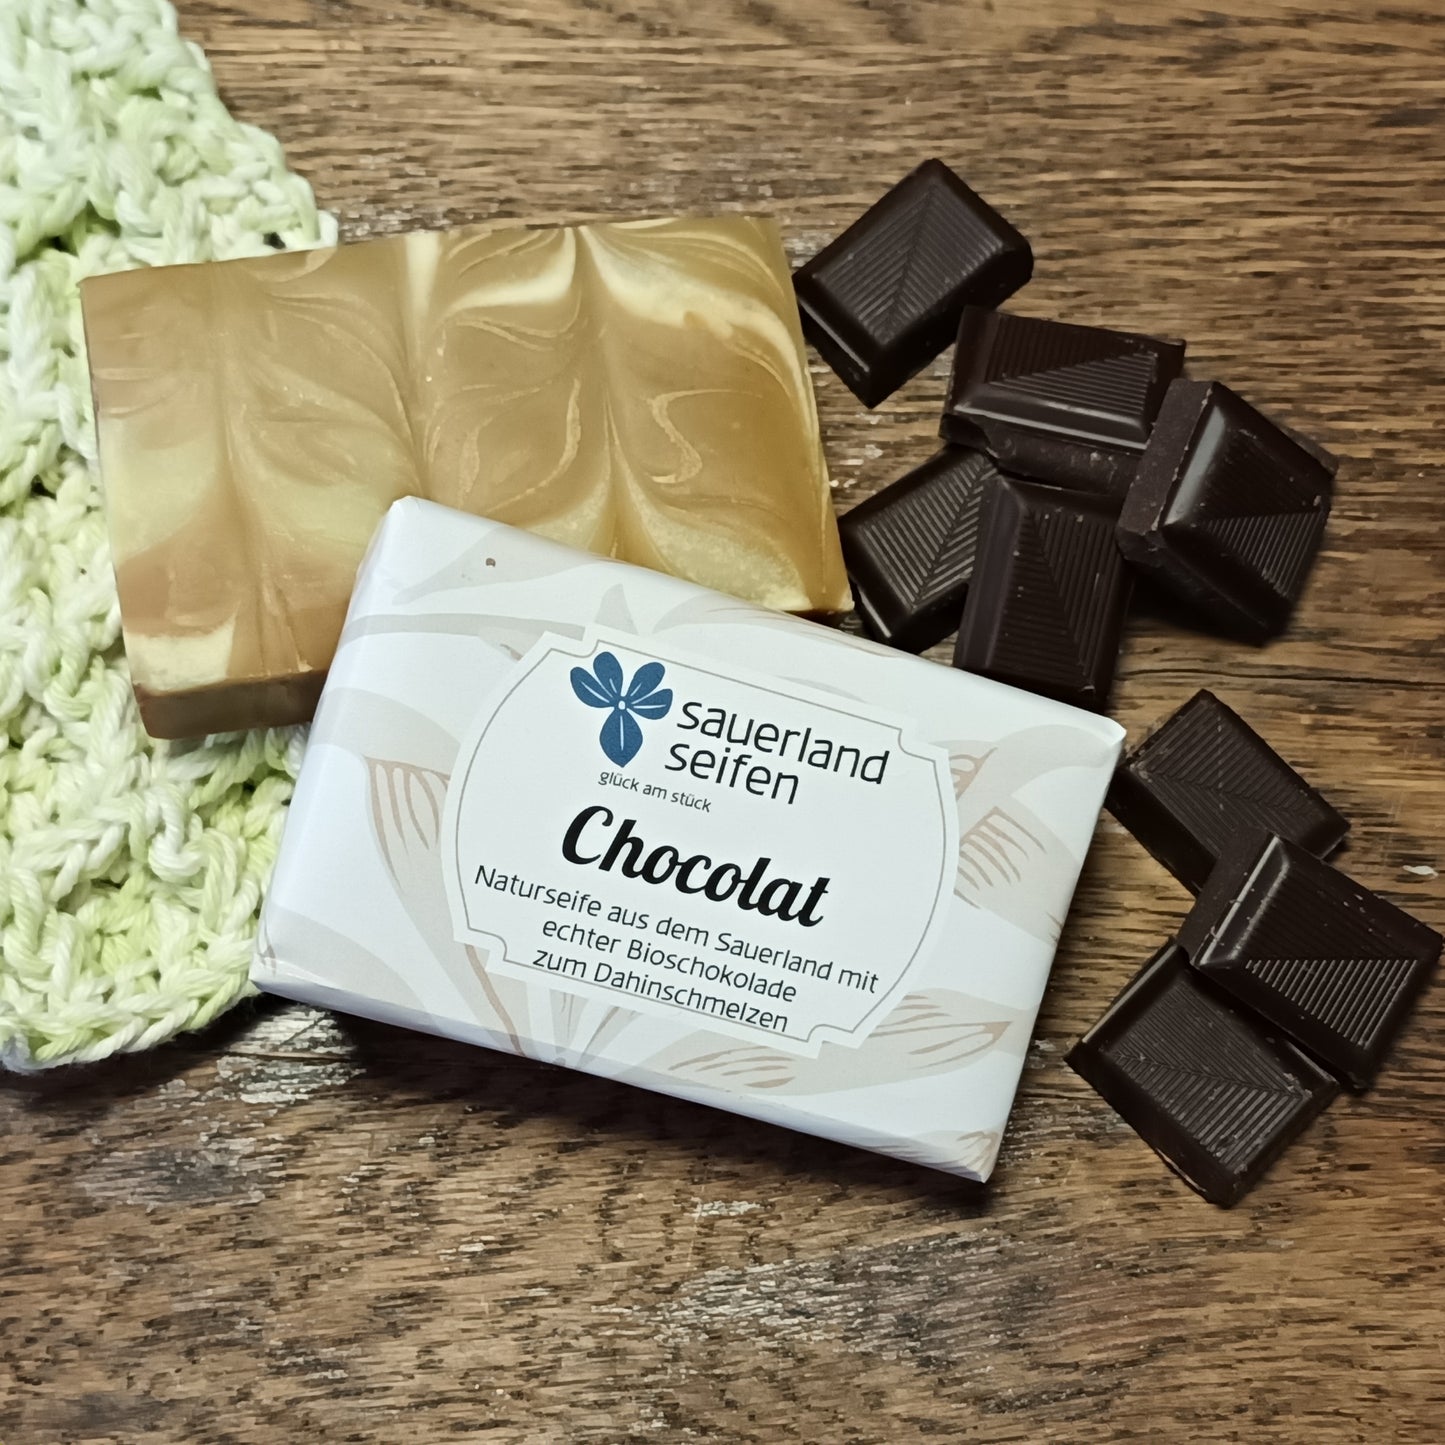 Chocolat - die feine Schokoladenseife mit Vanilleduft